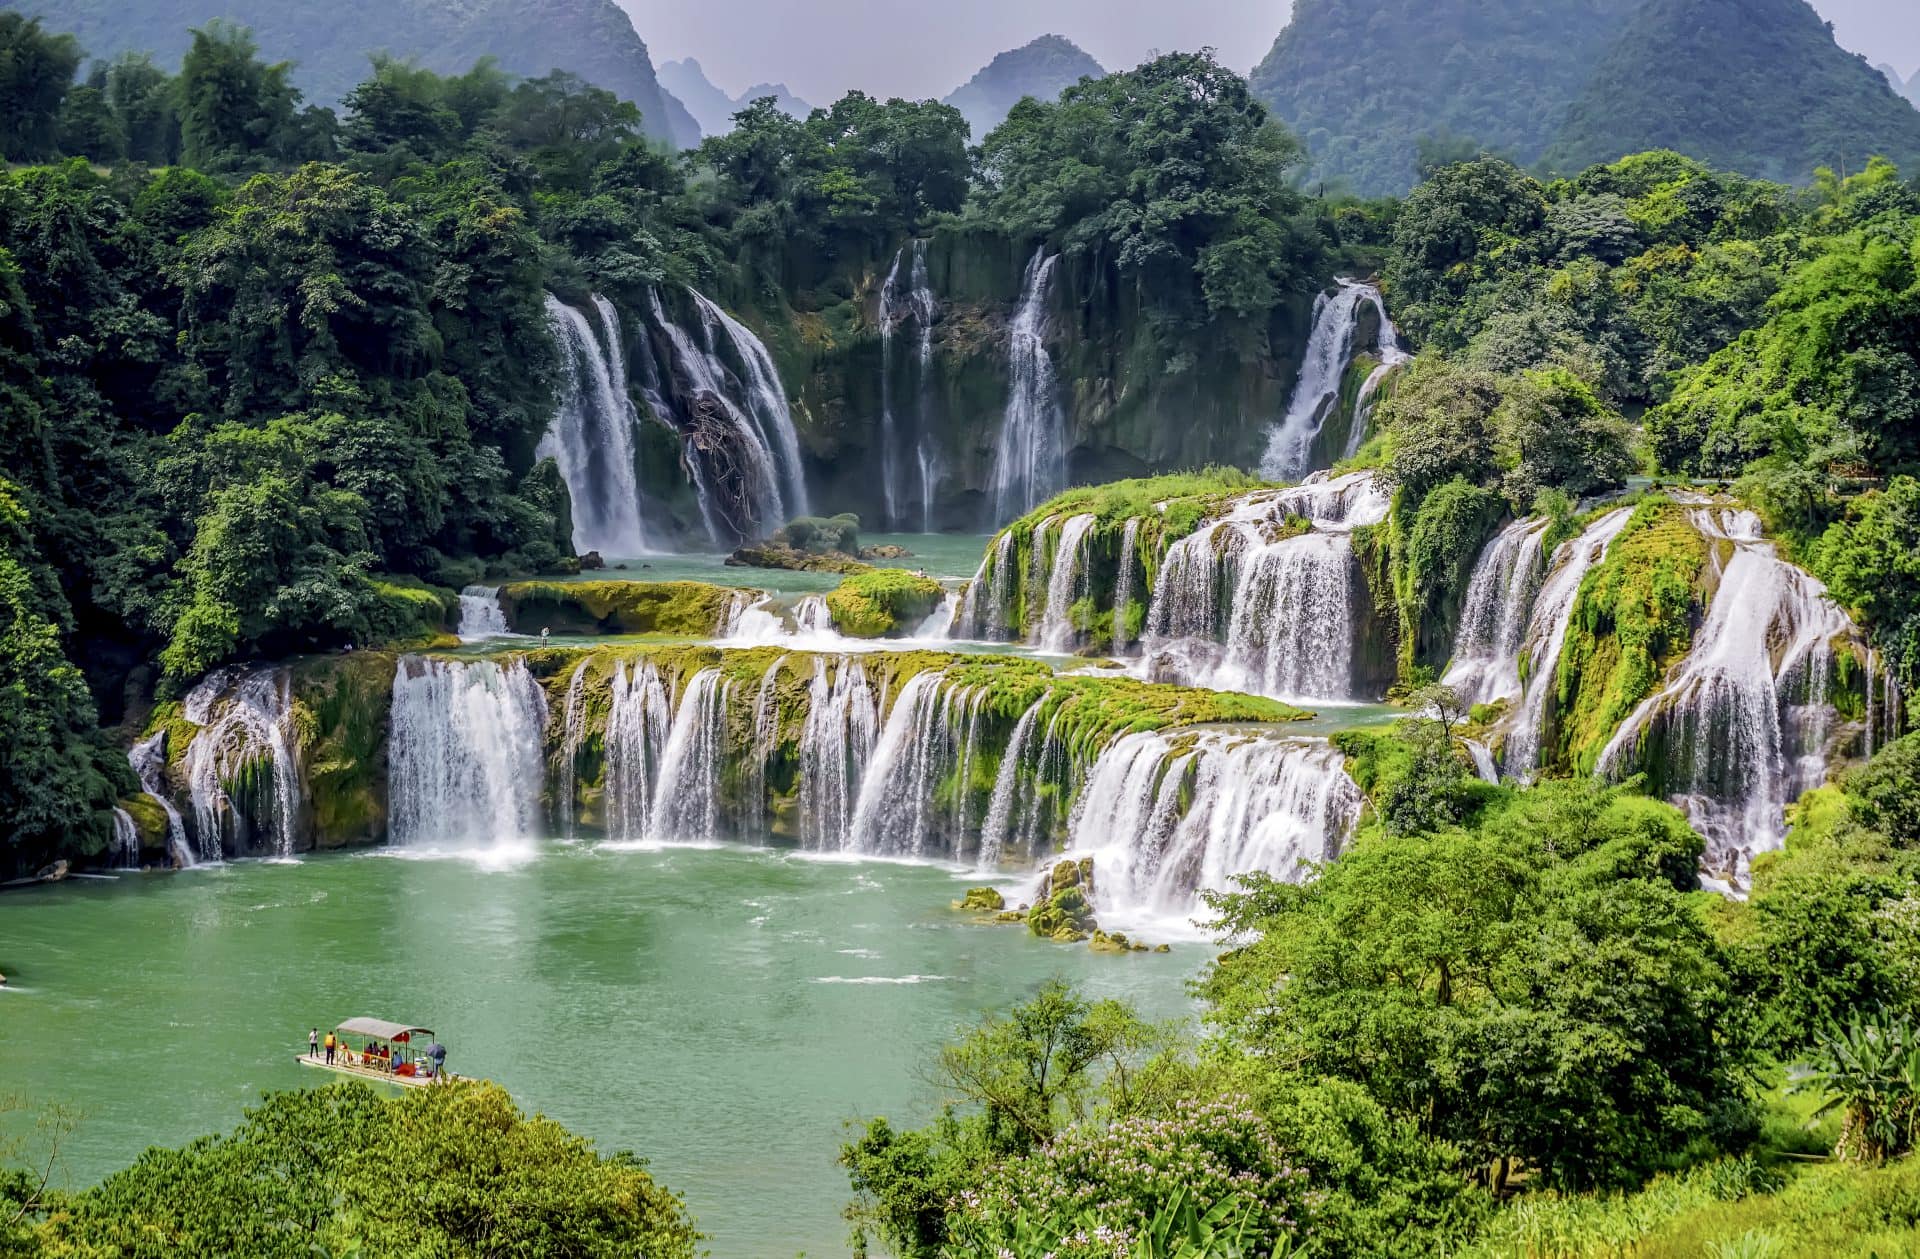 Mở cửa cho khách du lịch tham quan khu cảnh quan thác Bản Giốc - Trùng Khánh - Cao Bằng